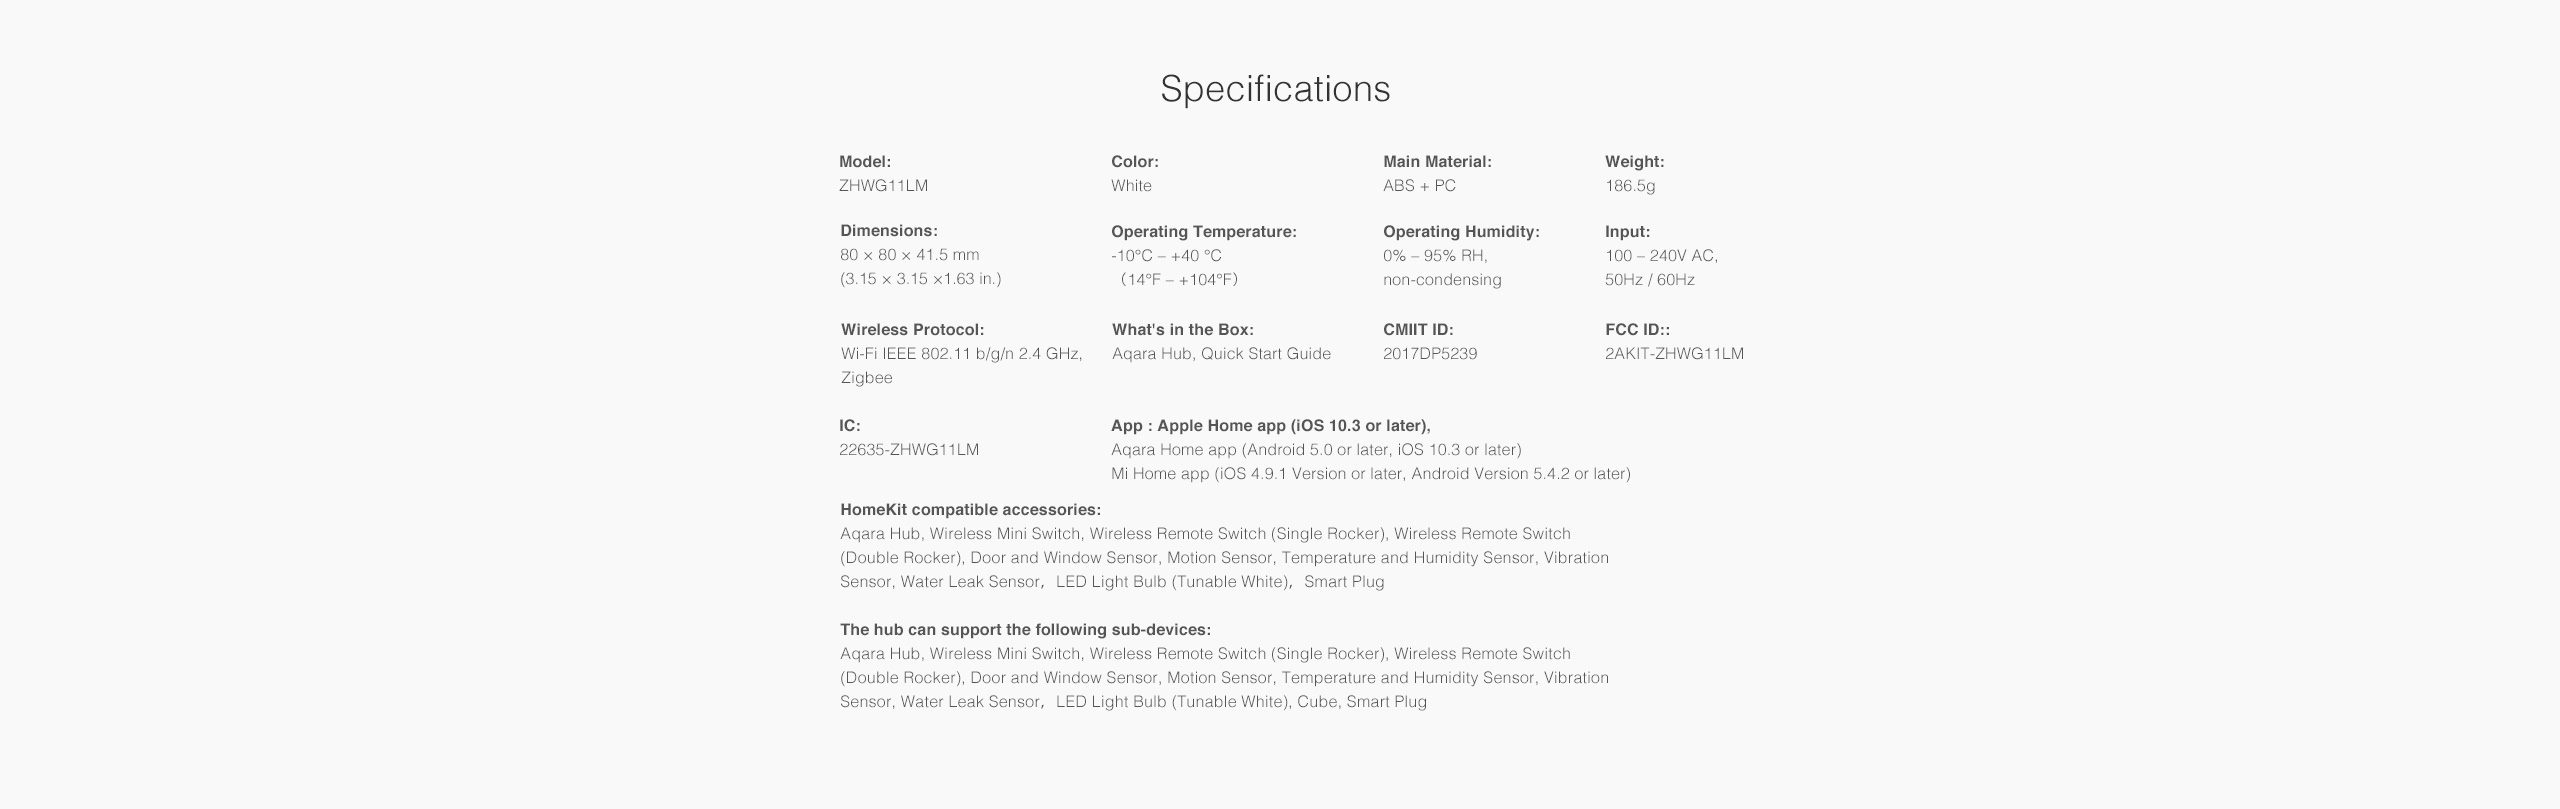 Elettrico di Telecomando Sistema Compatibile con Apple Homekit Personalizzato App Controllo Guangmaoxin Xiaomi Aqara Smart Motorizzato Elettrico Tenda Binari Mi Home App